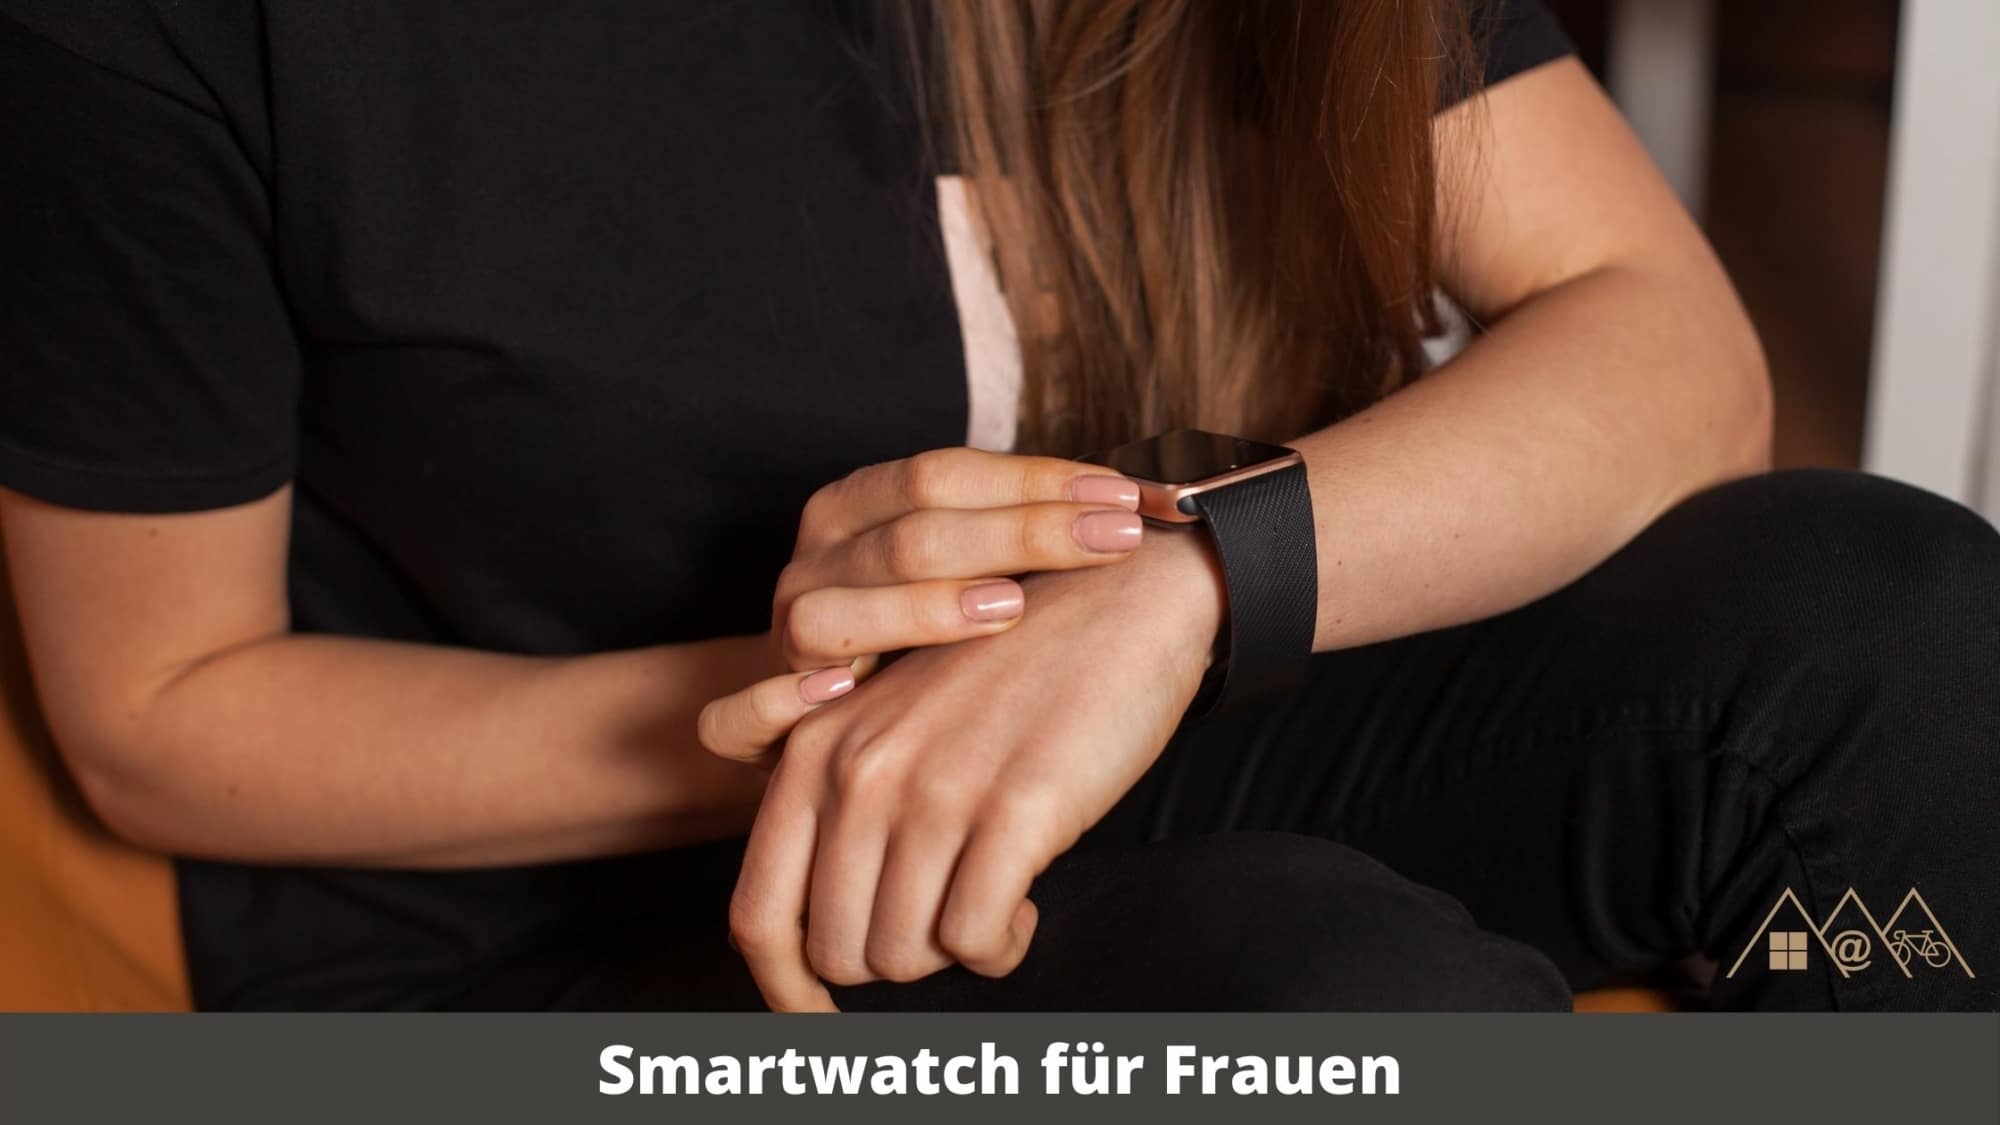 smartwatch für frauen 5 top modelle 2021